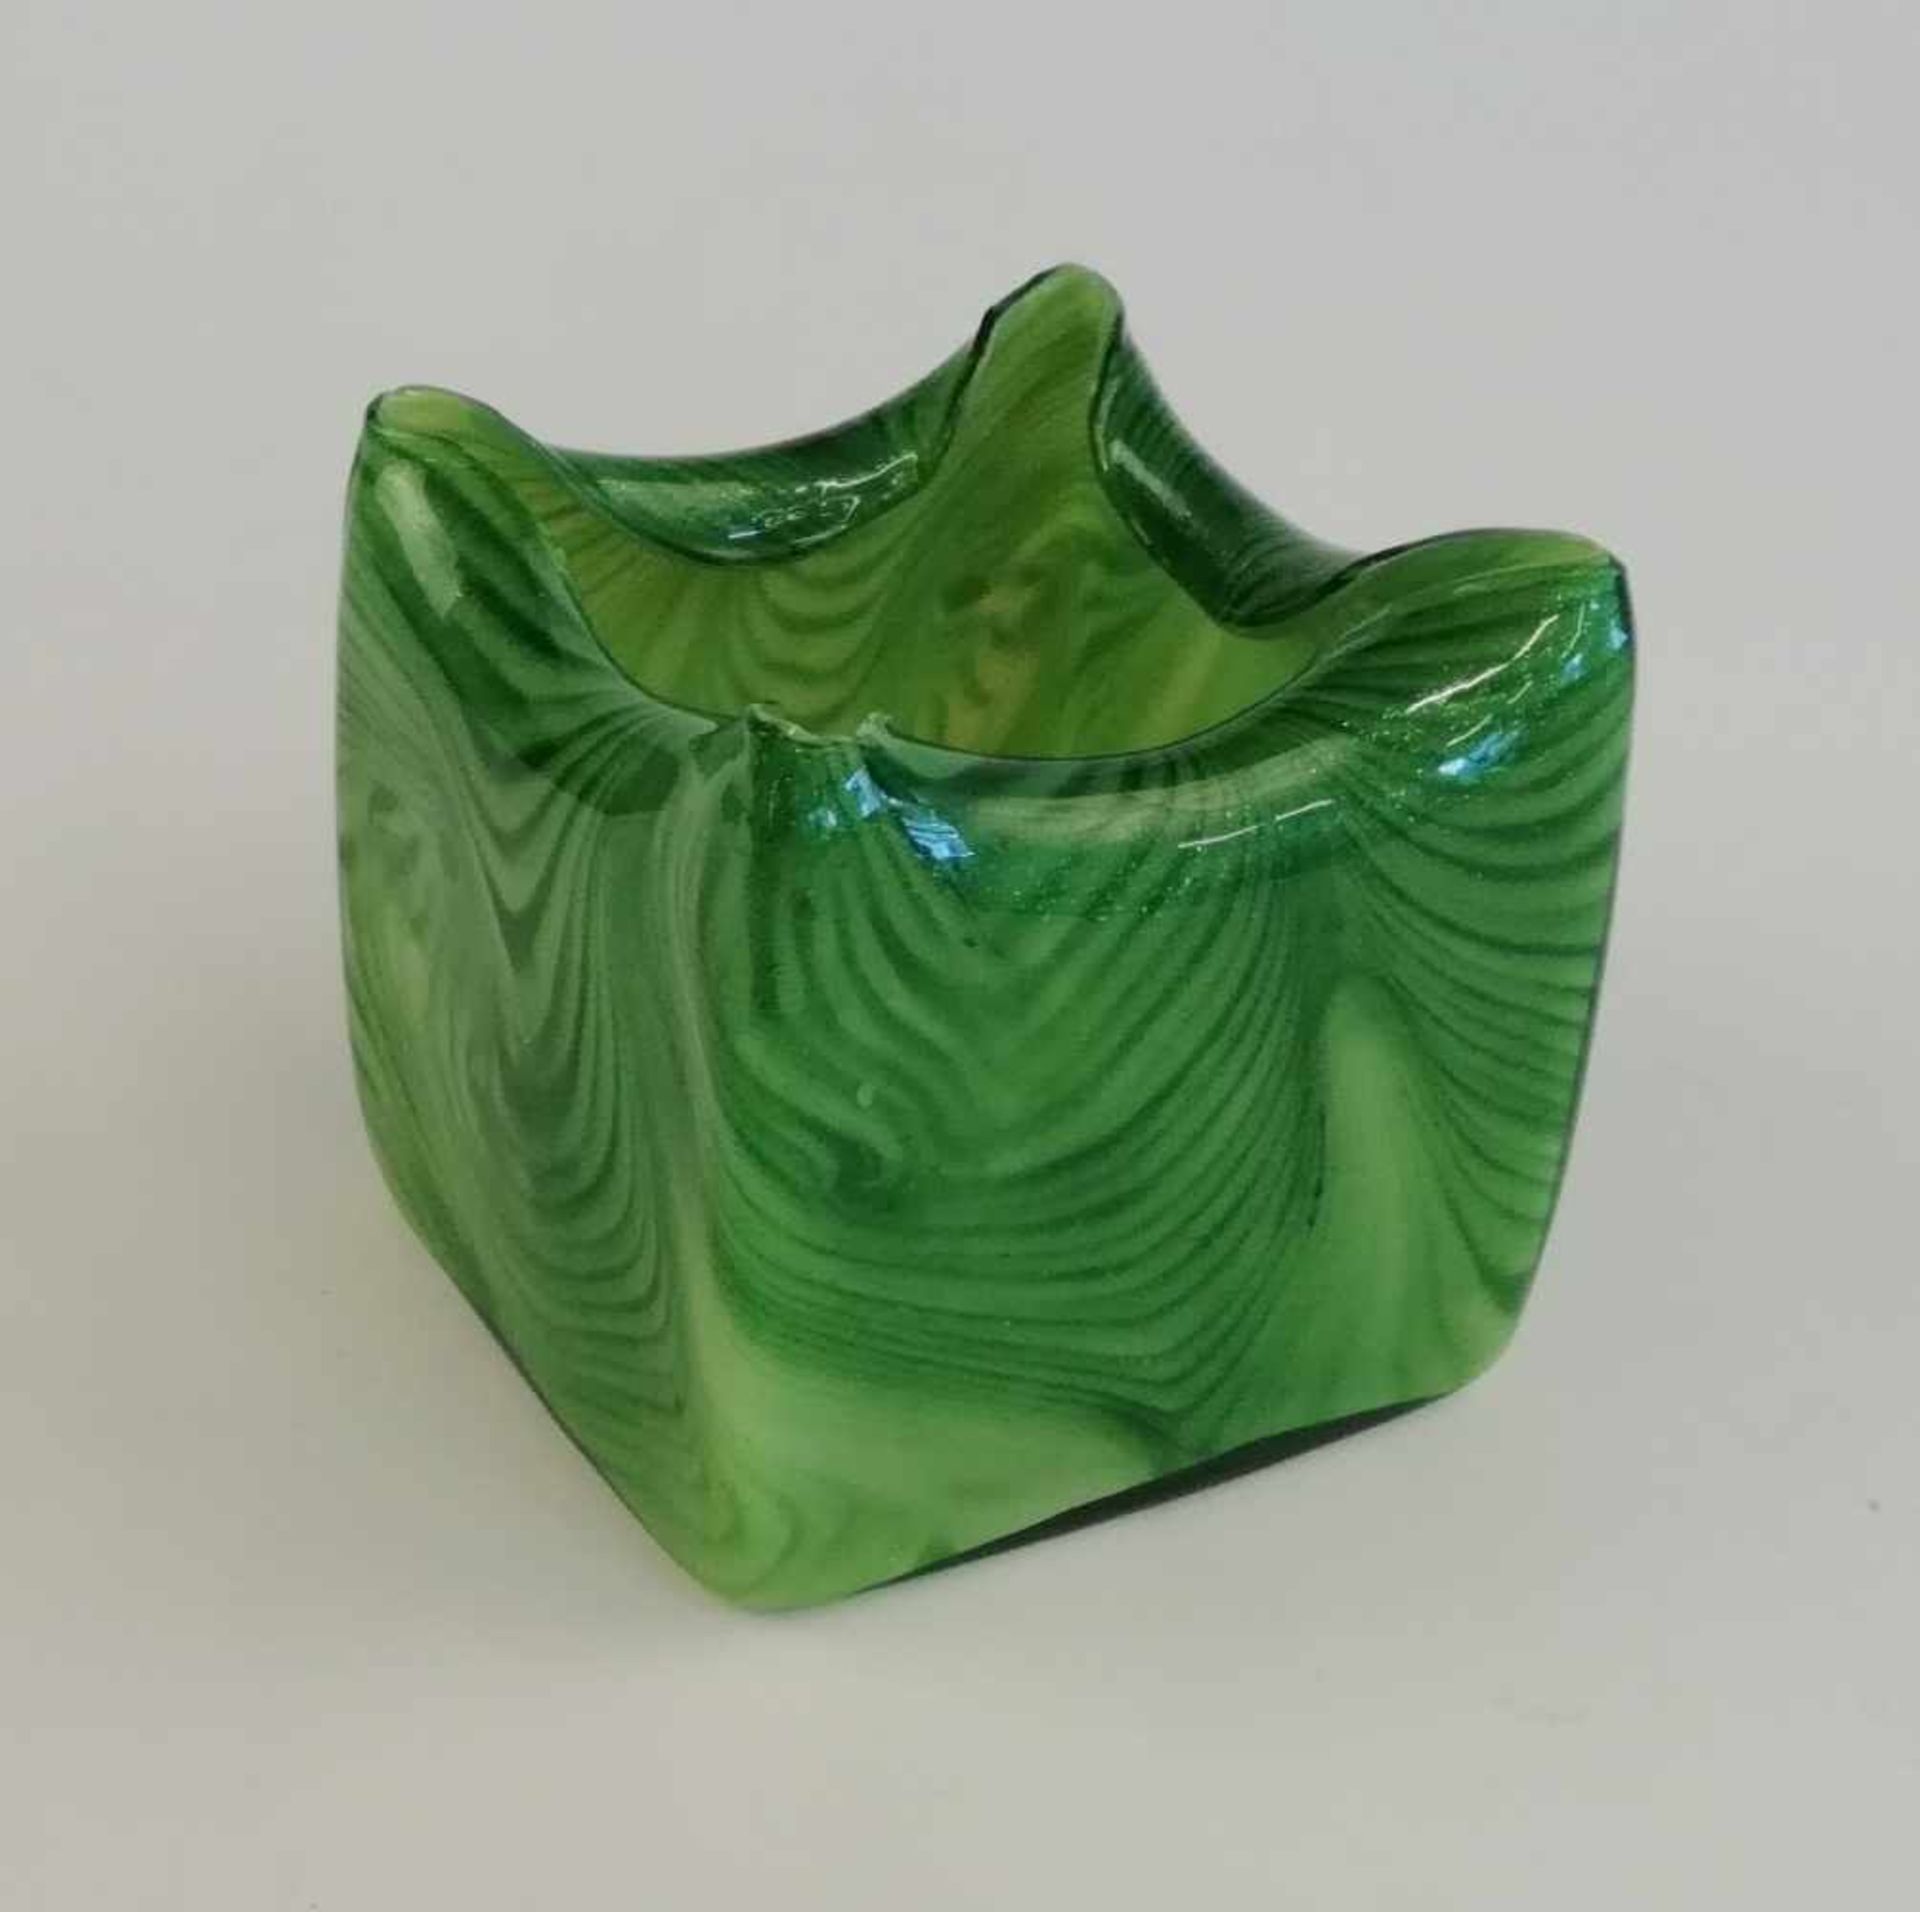 Würfelförmige Vase, Harrach´sche Hütte farbloses Glas, grün unterfangen mit eingearbeiteten